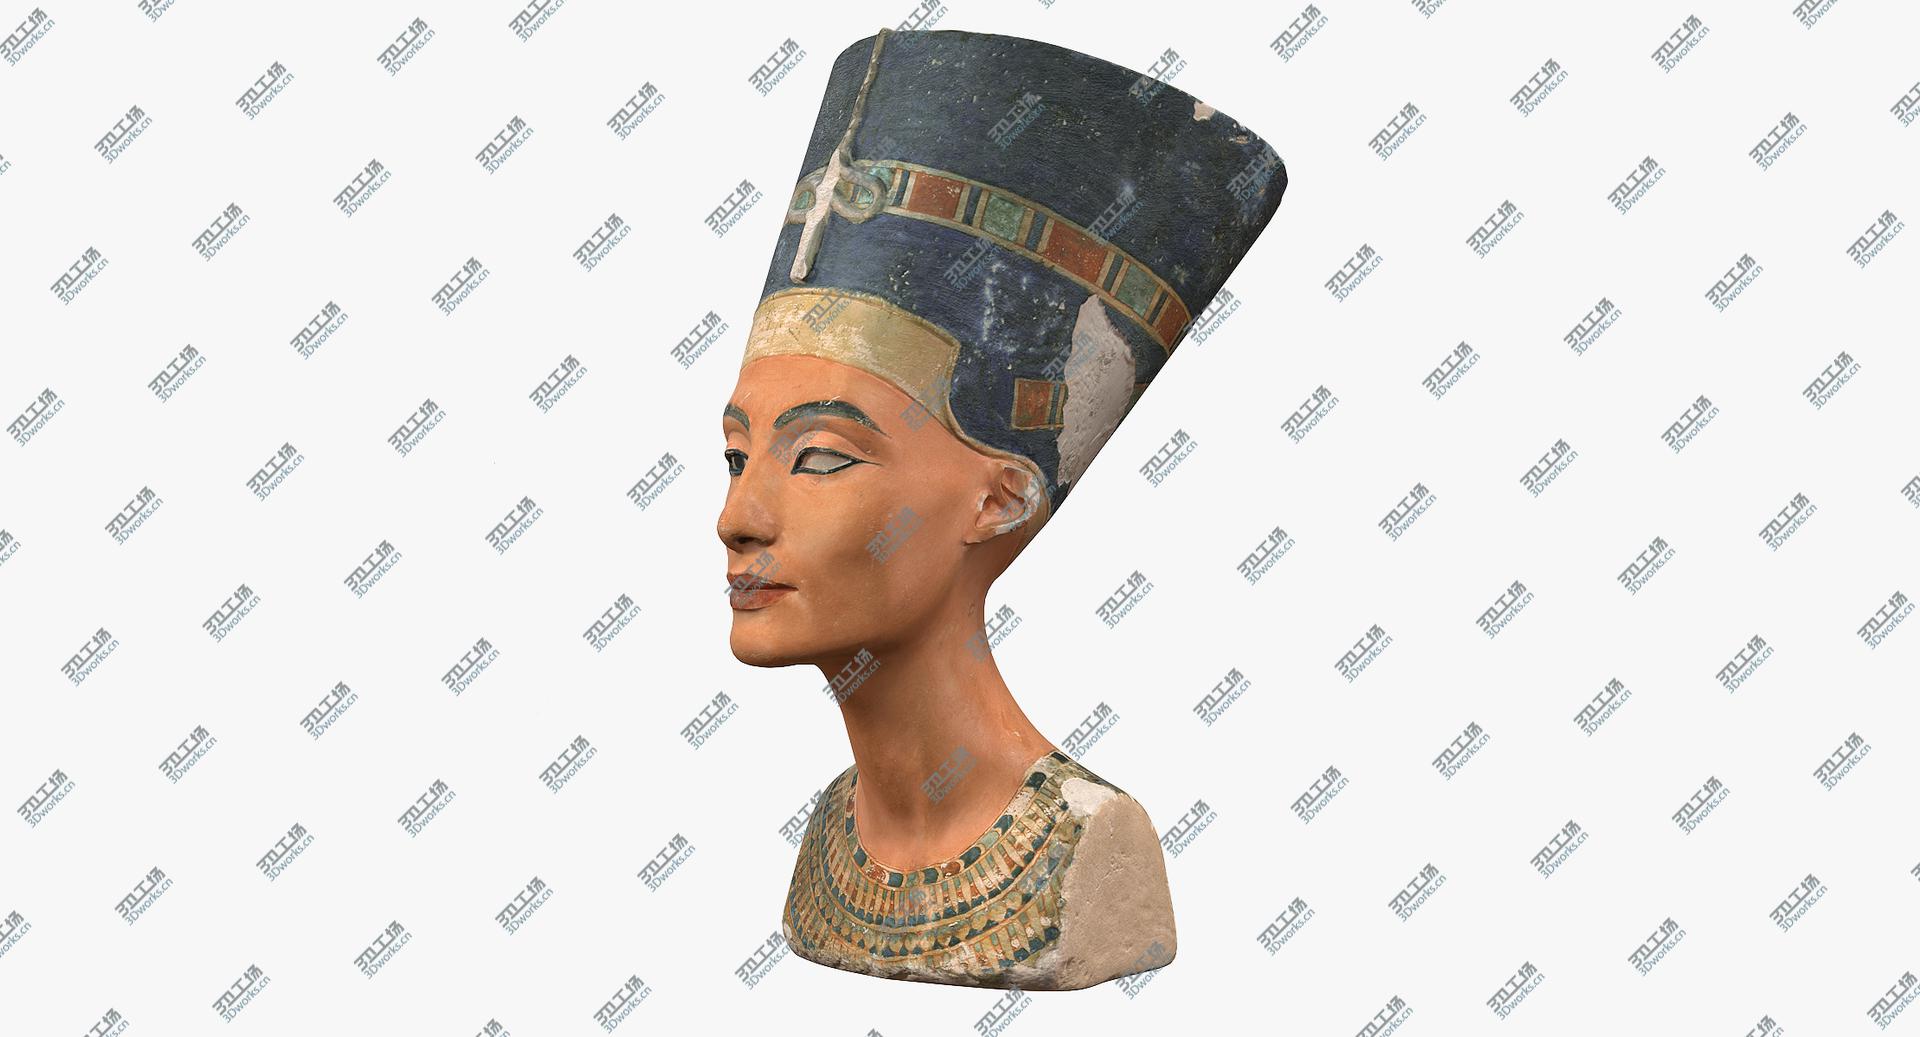 images/goods_img/2021040162/Nefertiti Bust 3D model/4.jpg